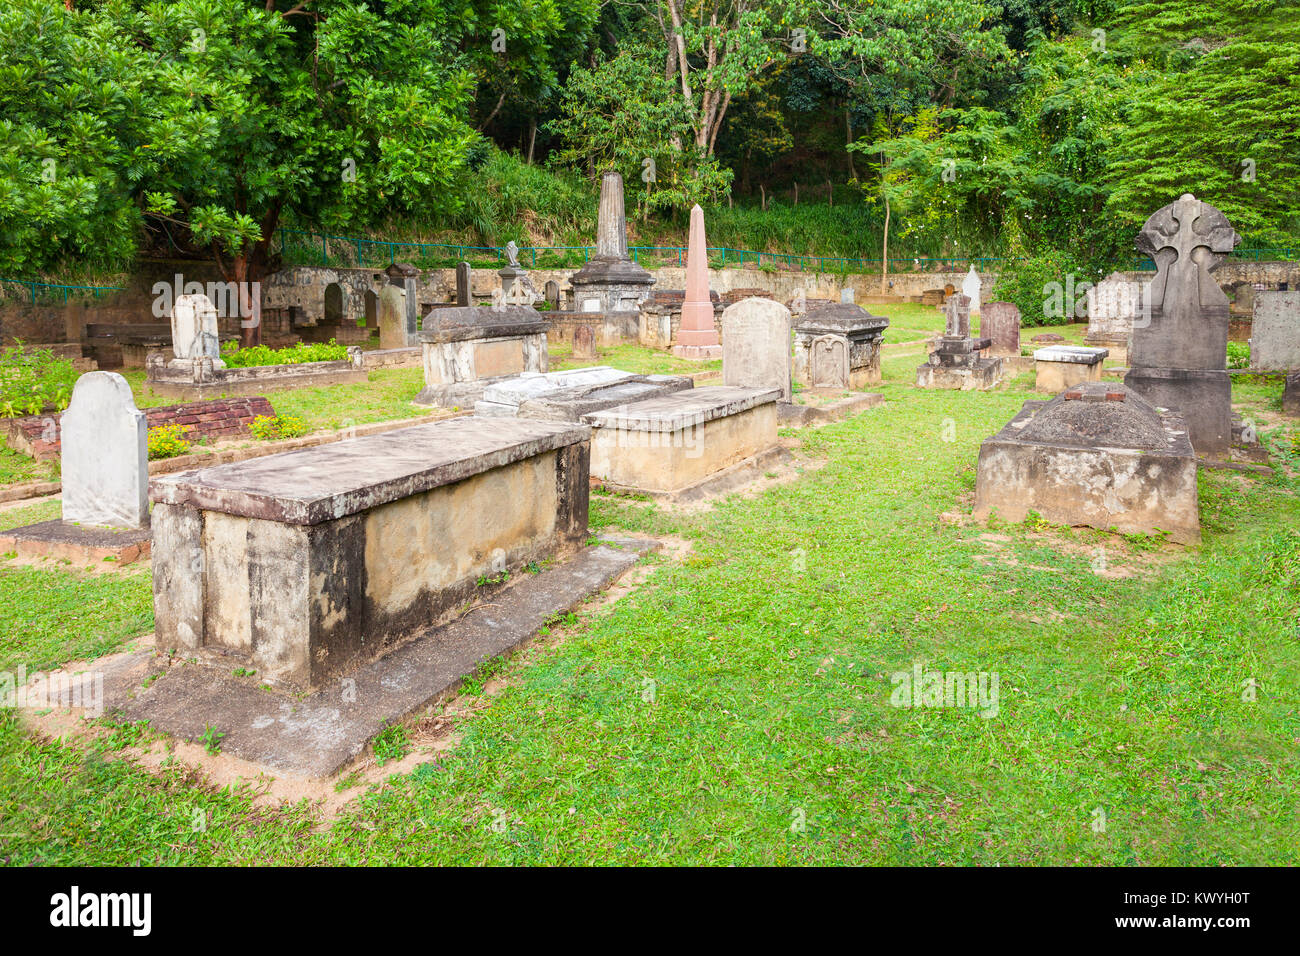 Britischen Garnisonsfriedhof oder Kandy Garnisonsfriedhof ist ein Britischer Friedhof in Kandy, Sri Lanka. Britischen Garnisonsfriedhof ist für Engländer w Stockfoto